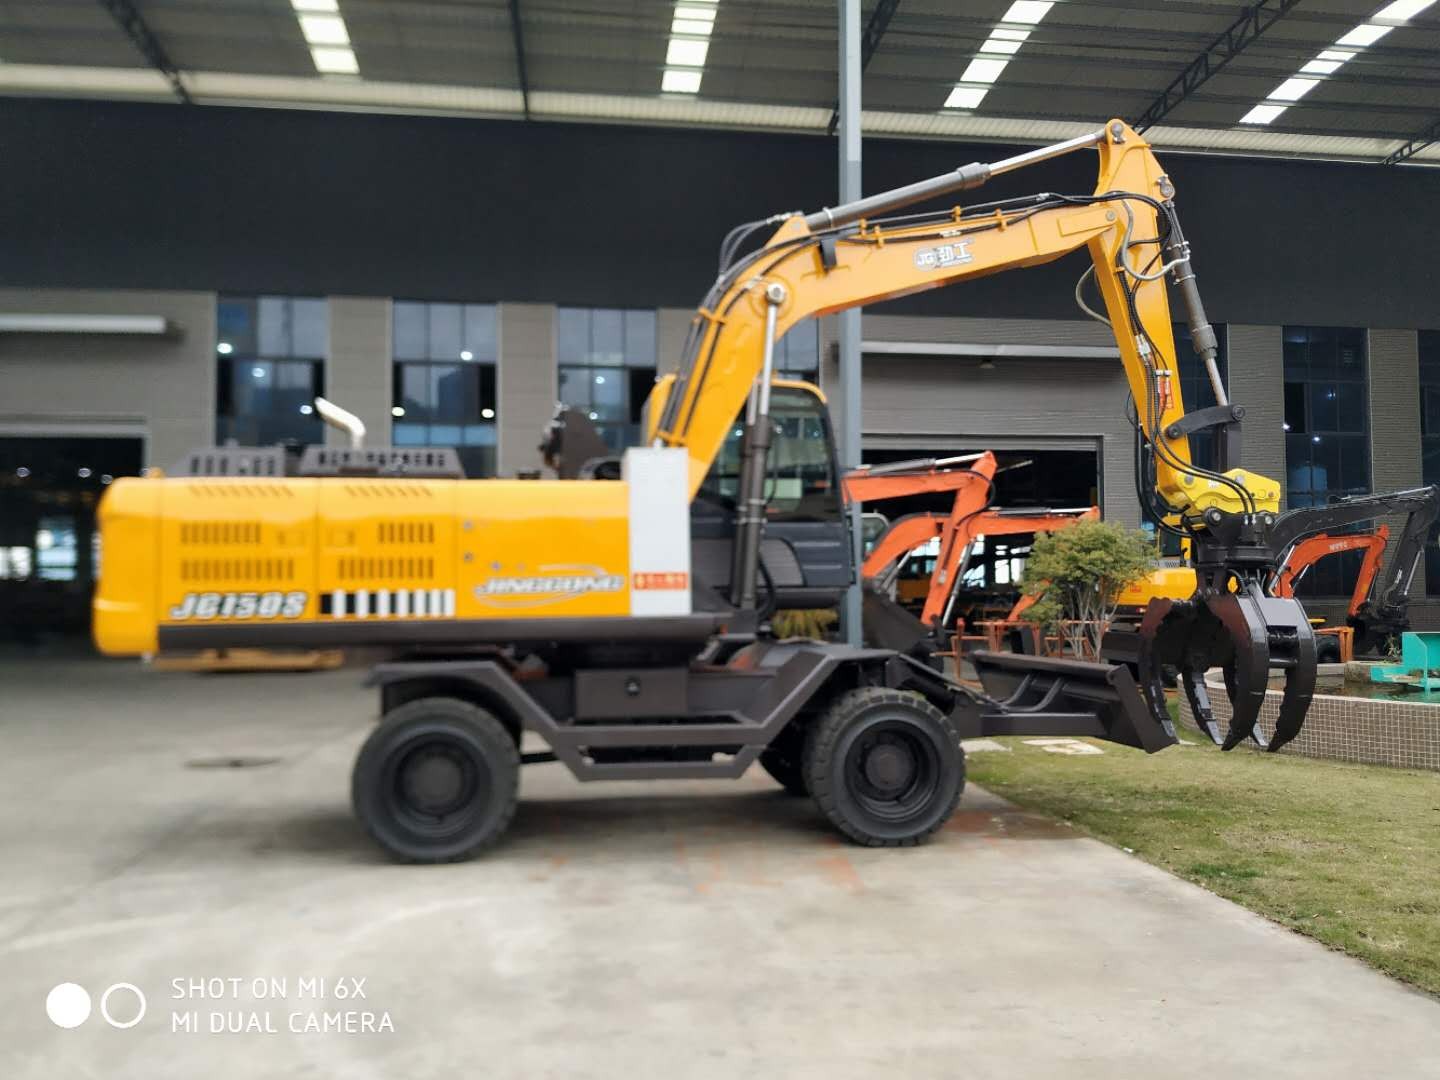 JG150S Scrap Handling Machine Excavator